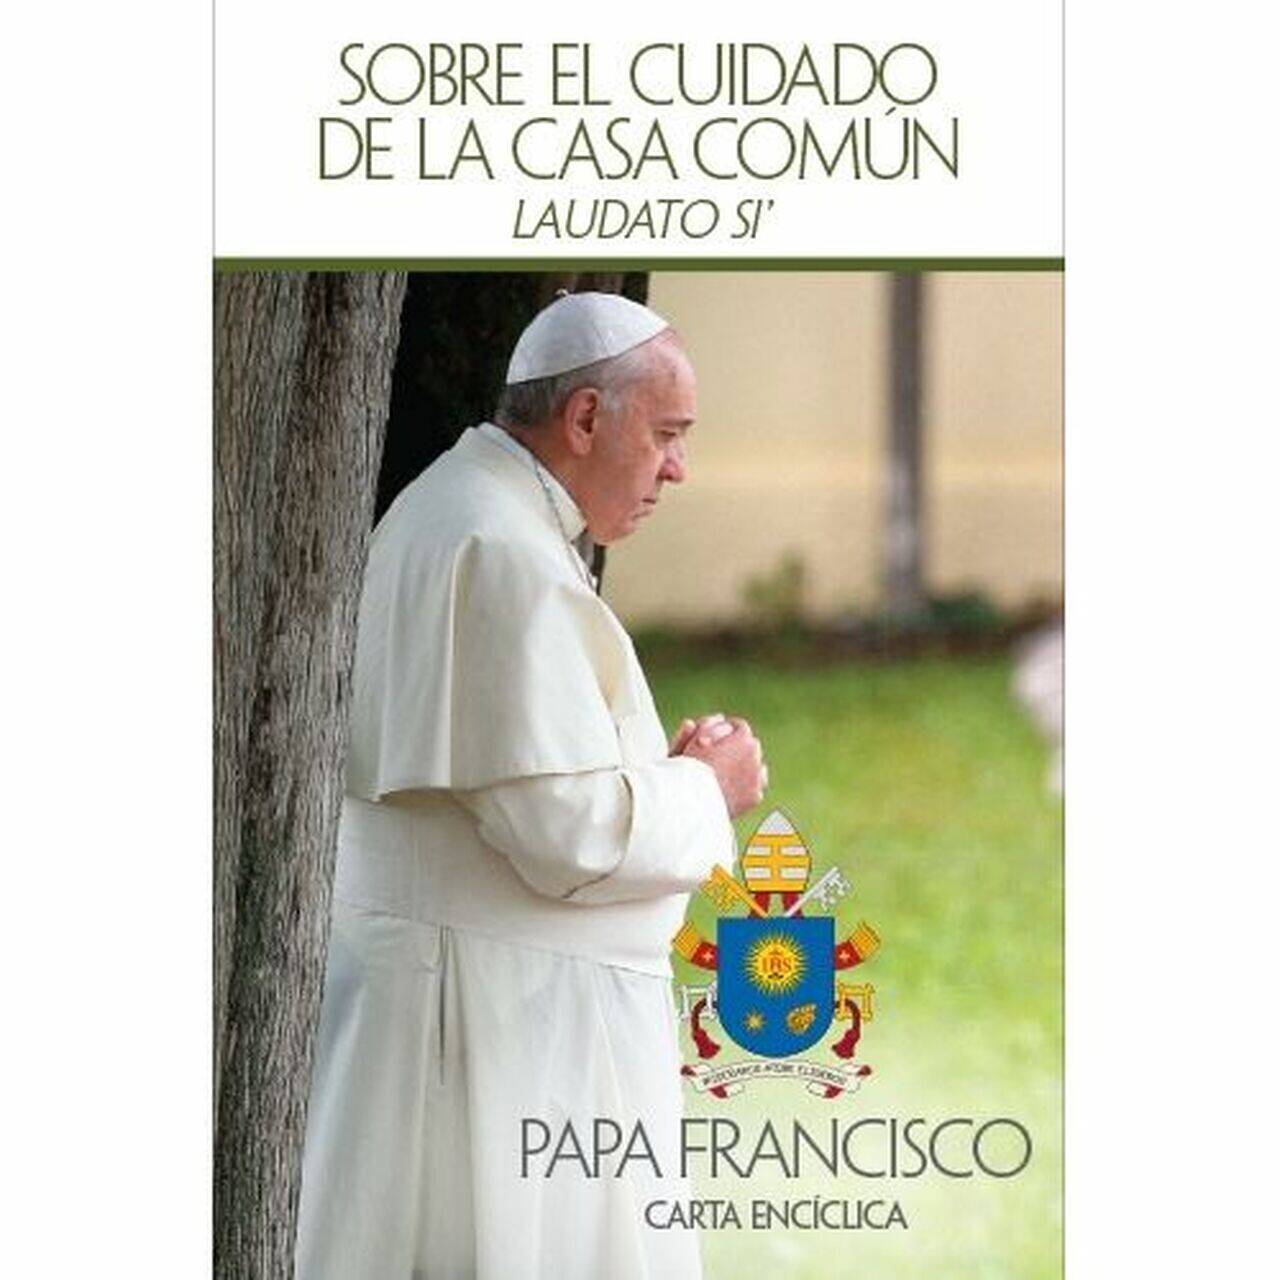 "Laudato Si': Sobre el cuidado de la casa común" by Pope Francis